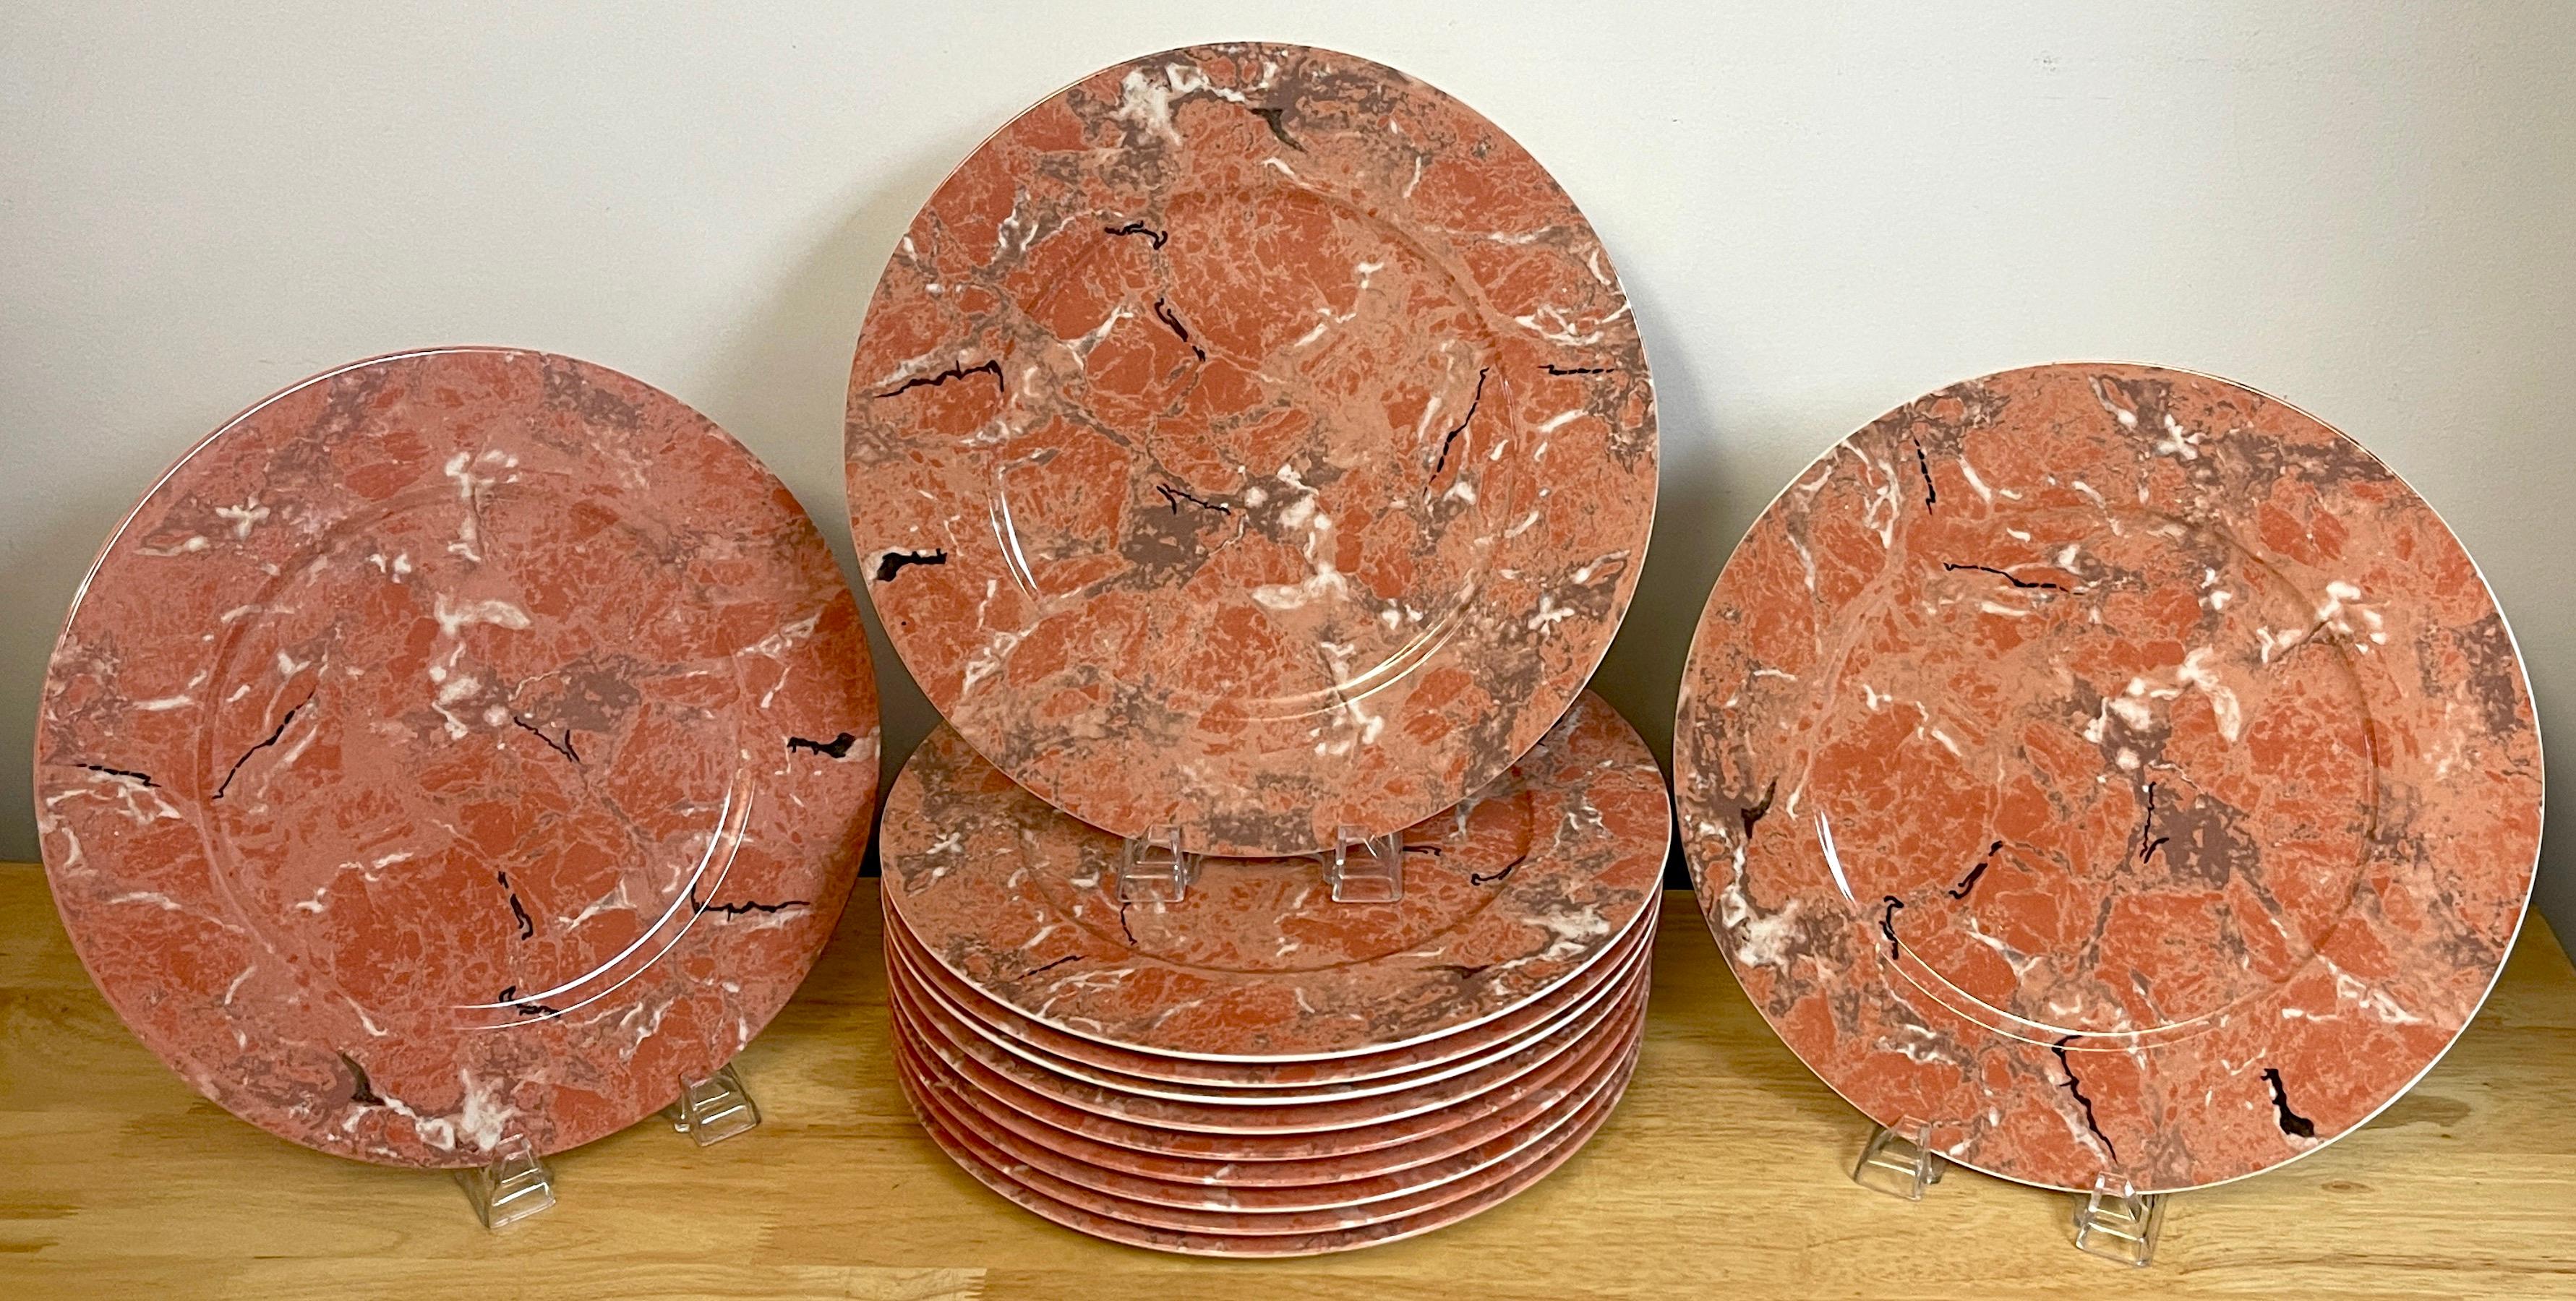 12 assiettes de service en marbre de couleur corail de Villeroy & Boch, chacune décorée de façon réaliste pour ressembler au marbre. Marqué Villeroy & Boch 'Luxembourg'.